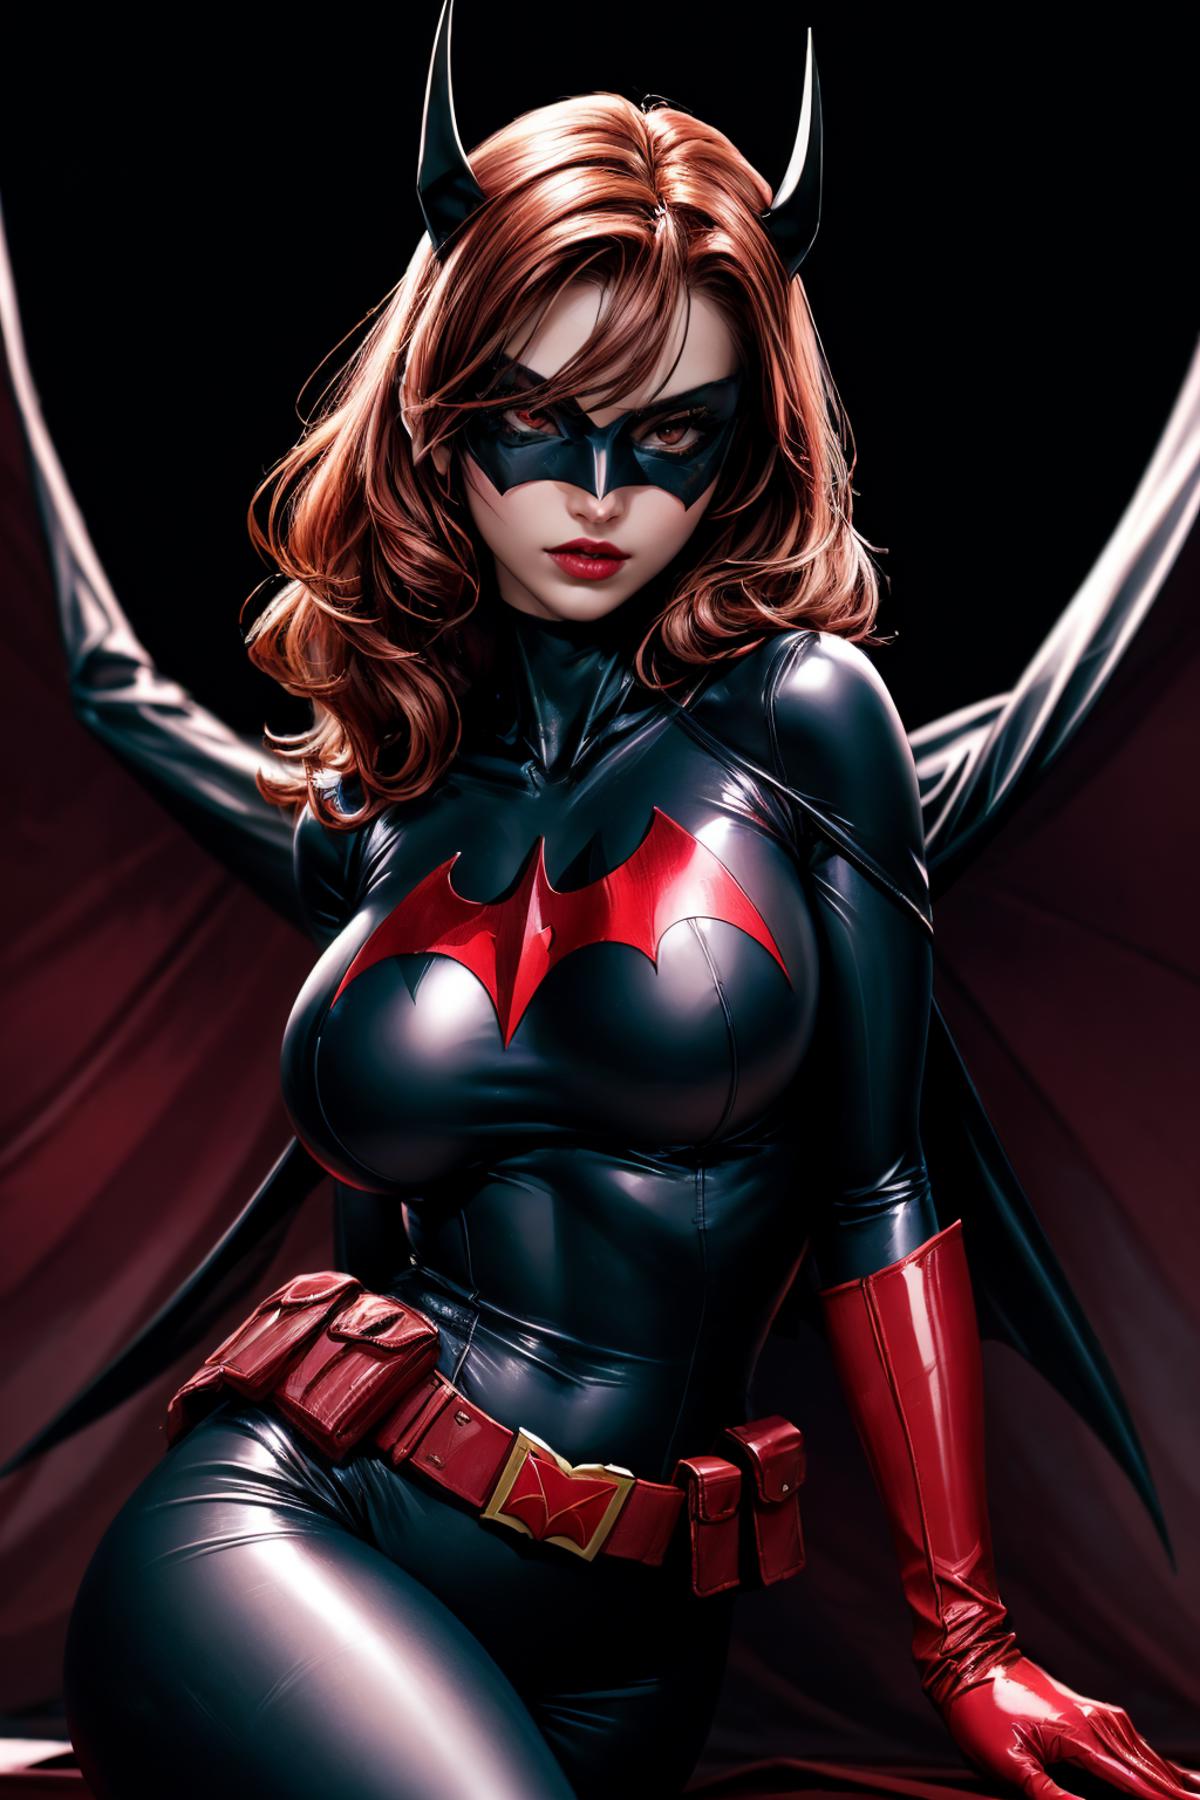 Batwoman image by iJWiTGS8